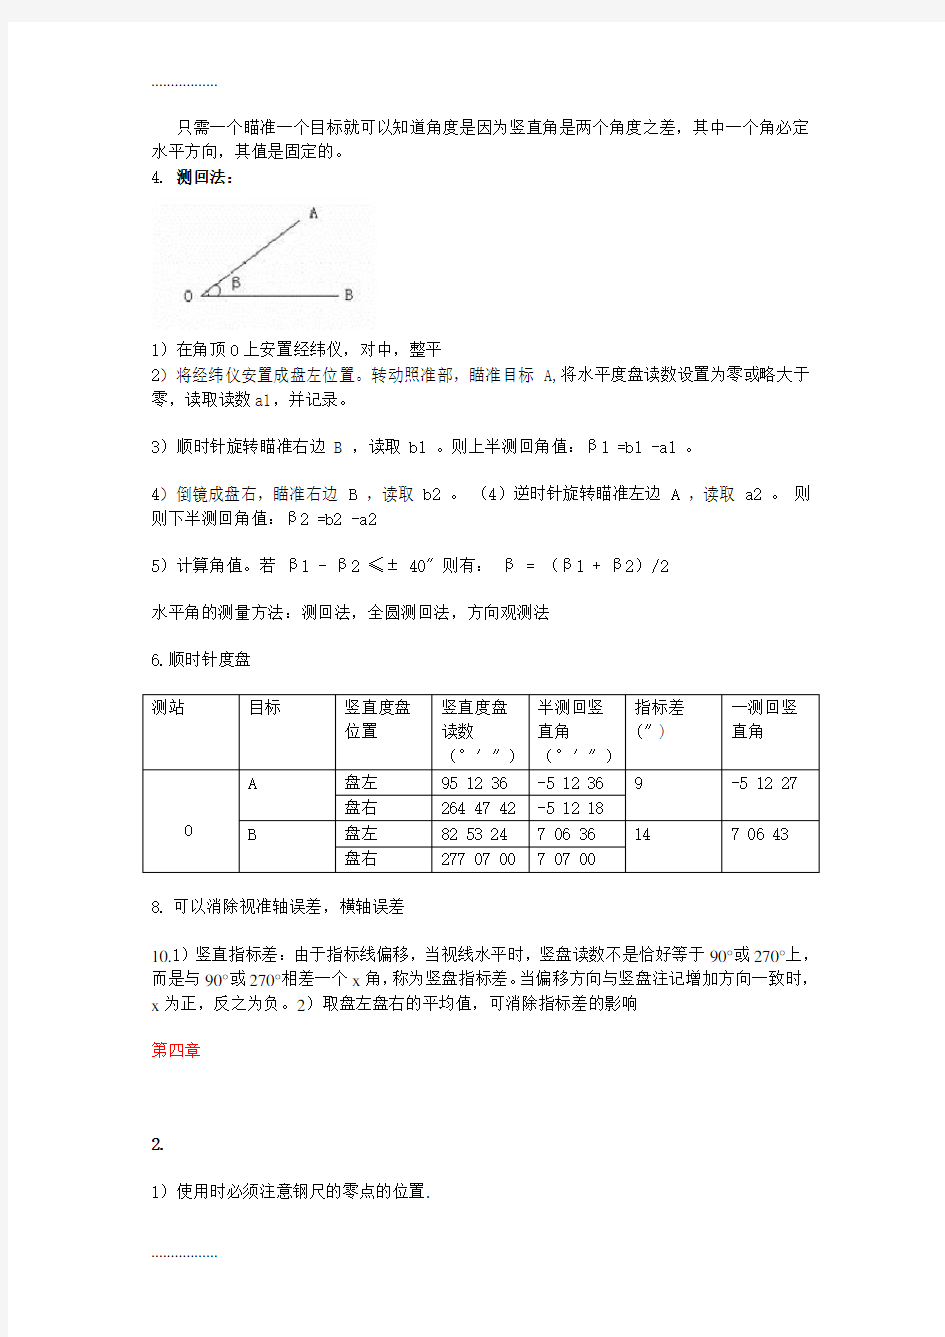 (整理)建筑工程测量(偶数)课后习题_张豪